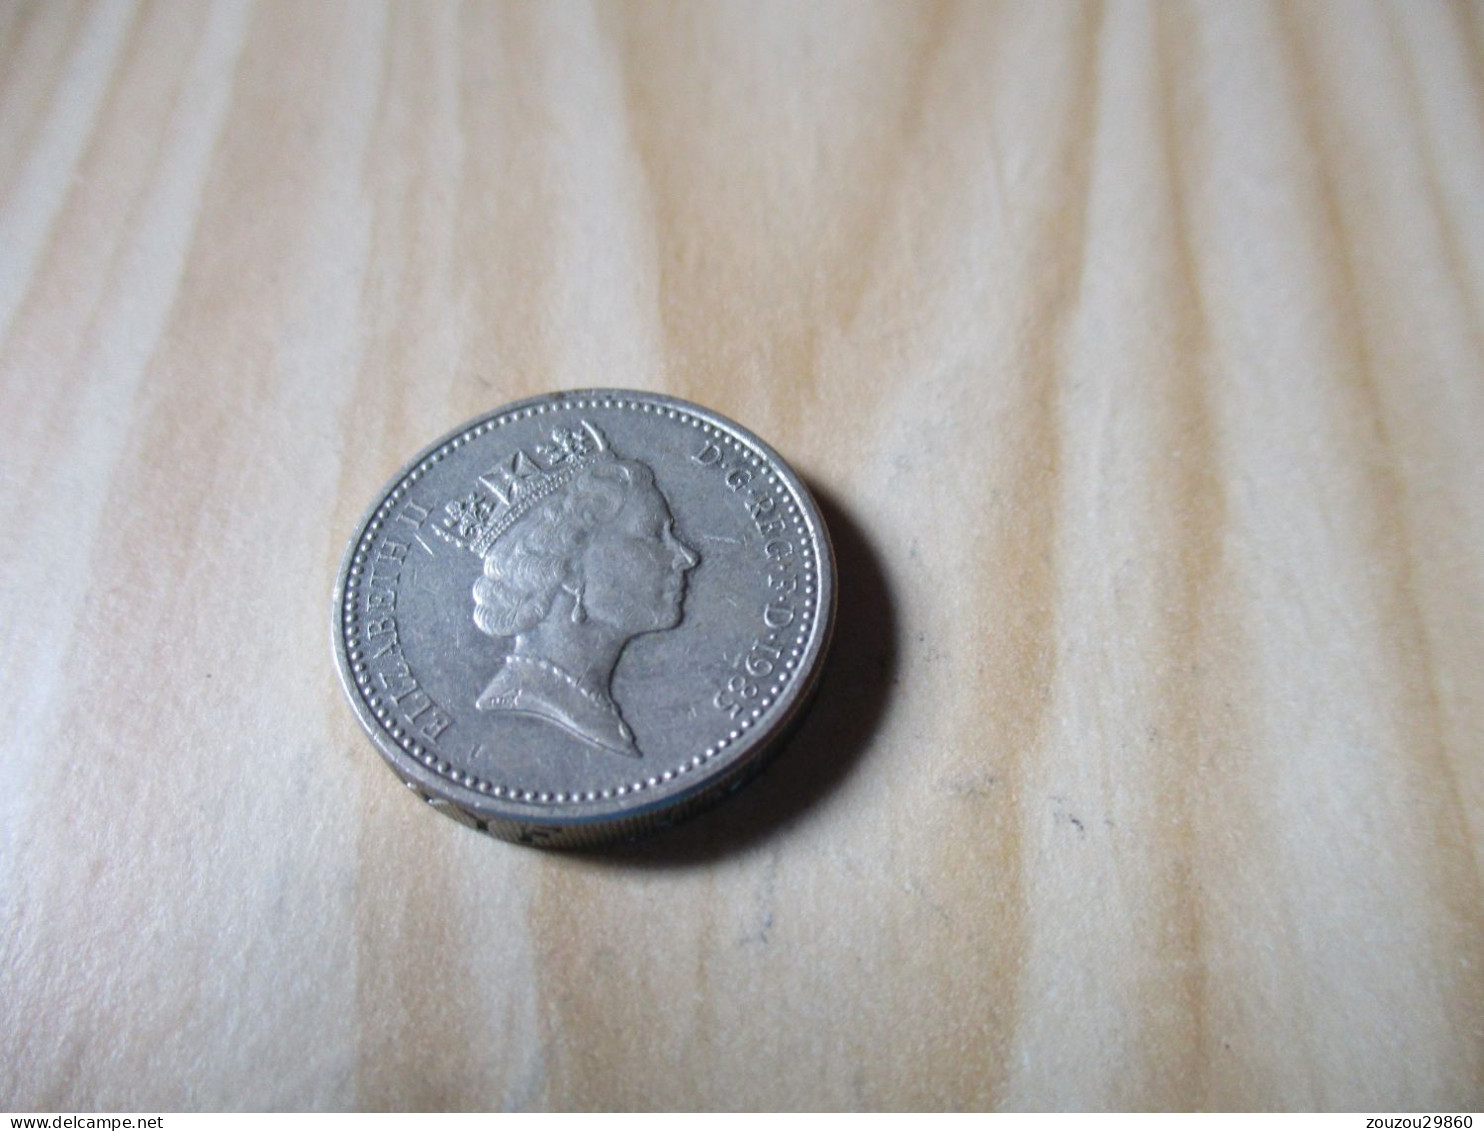 Grande-Bretagne - One Pound Elizabeth II 1985.N°619. - 1 Pound